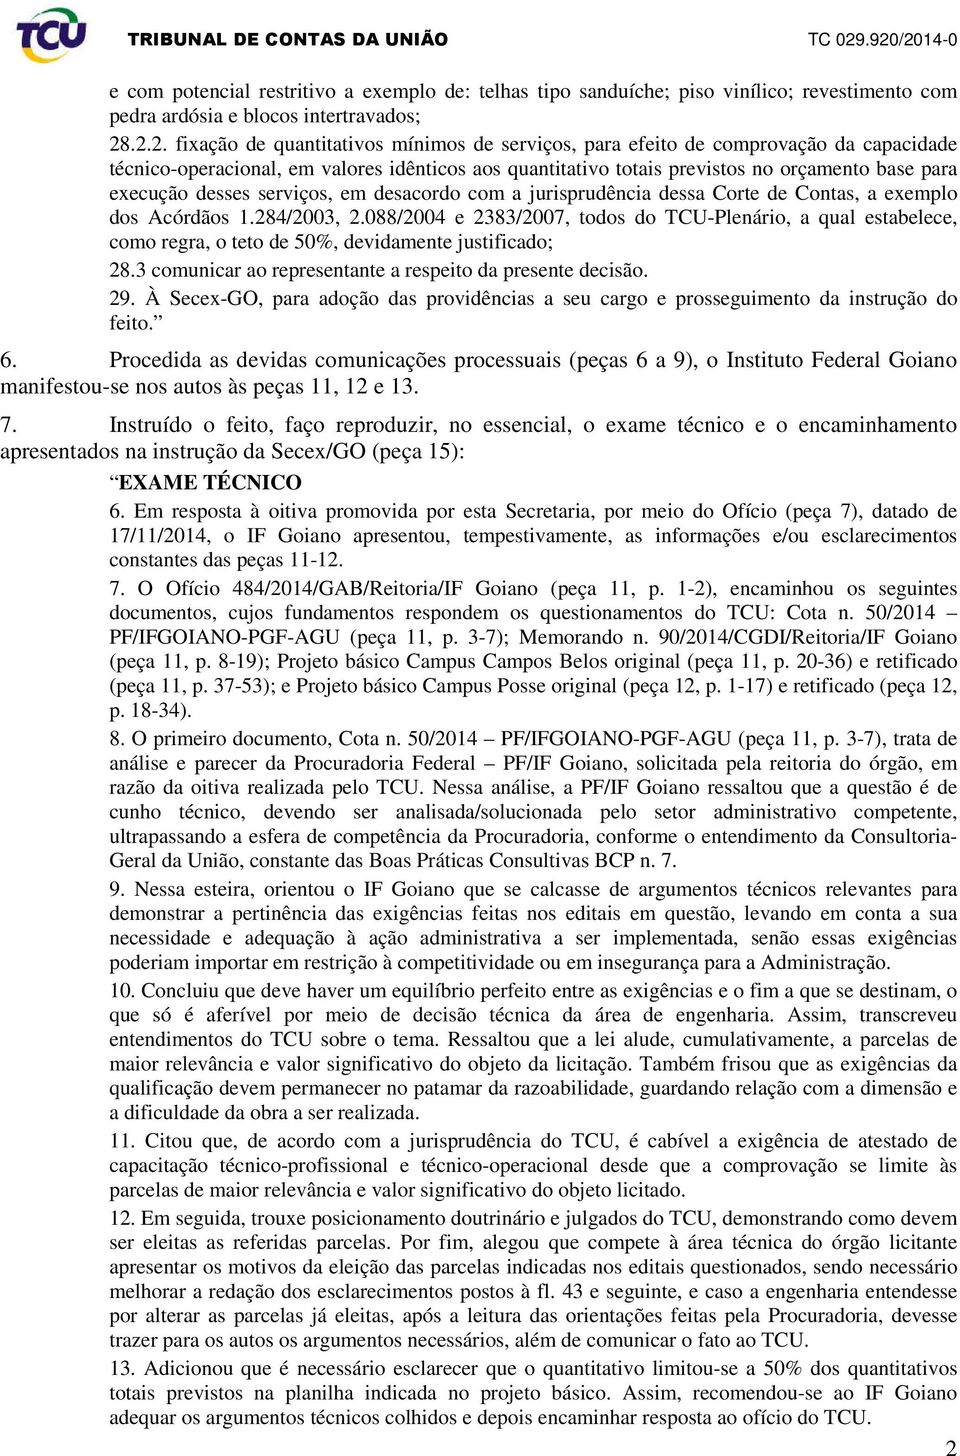 execução desses serviços, em desacordo com a jurisprudência dessa Corte de Contas, a exemplo dos Acórdãos 1.284/2003, 2.